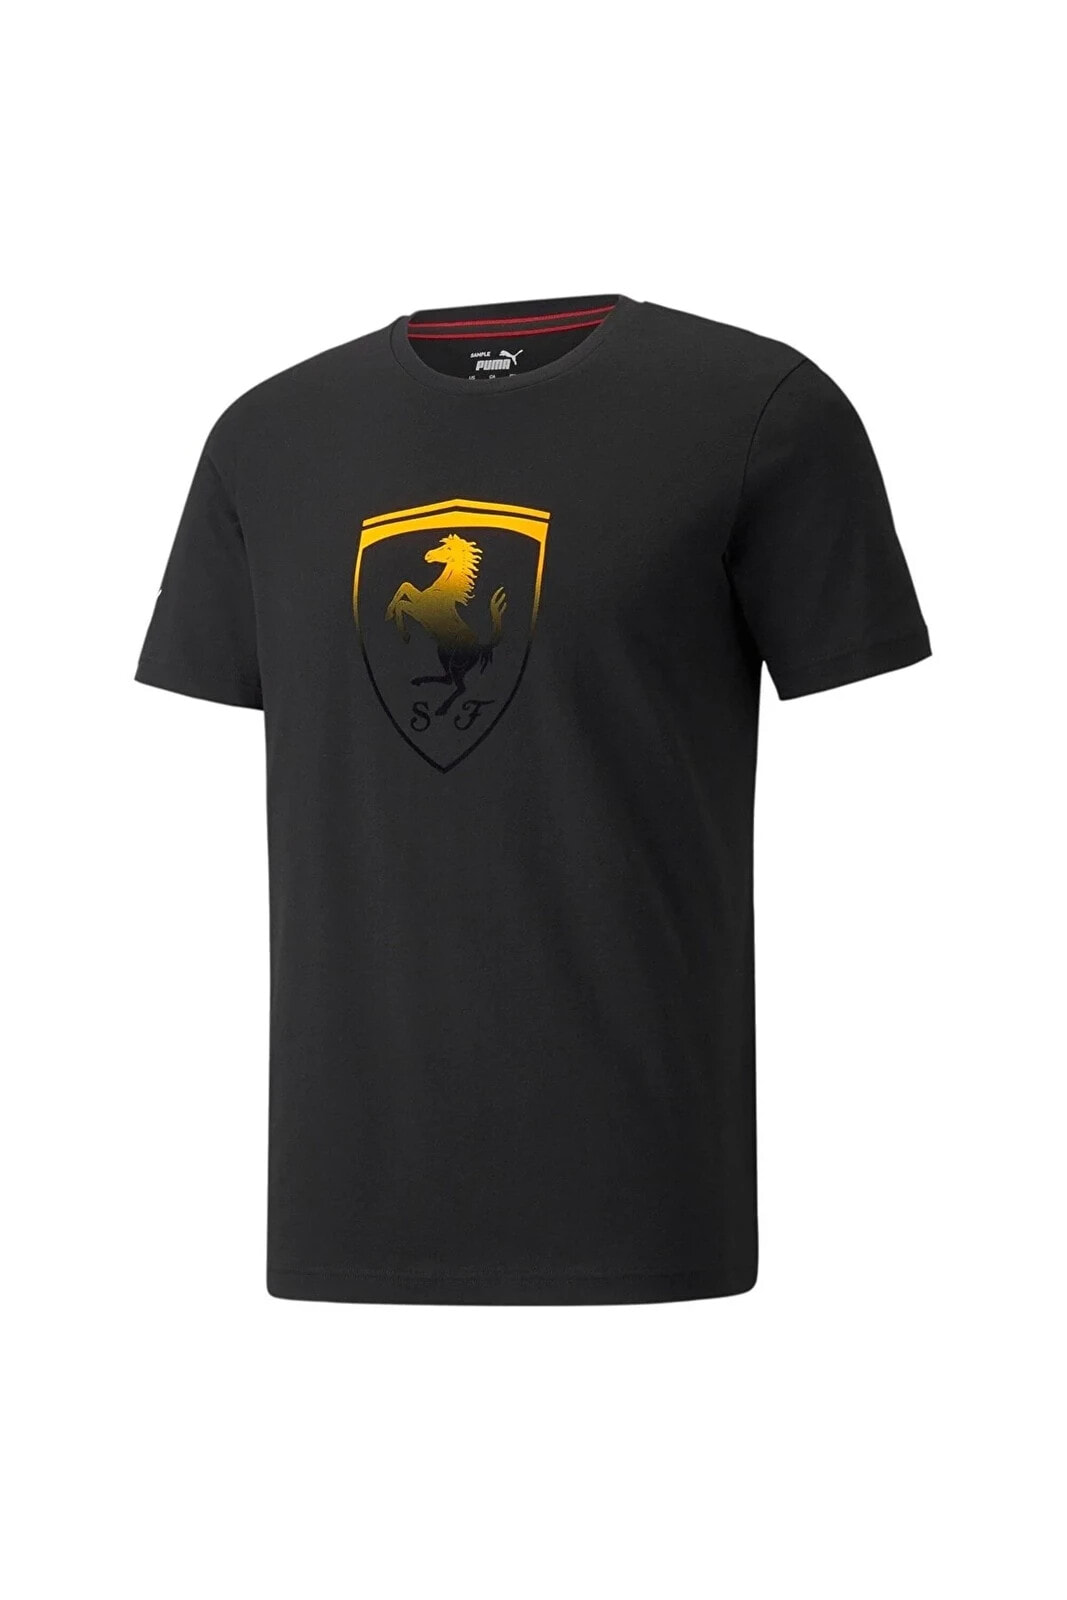 Scuderia Ferrari Race Big Shield Erkek T-shirt